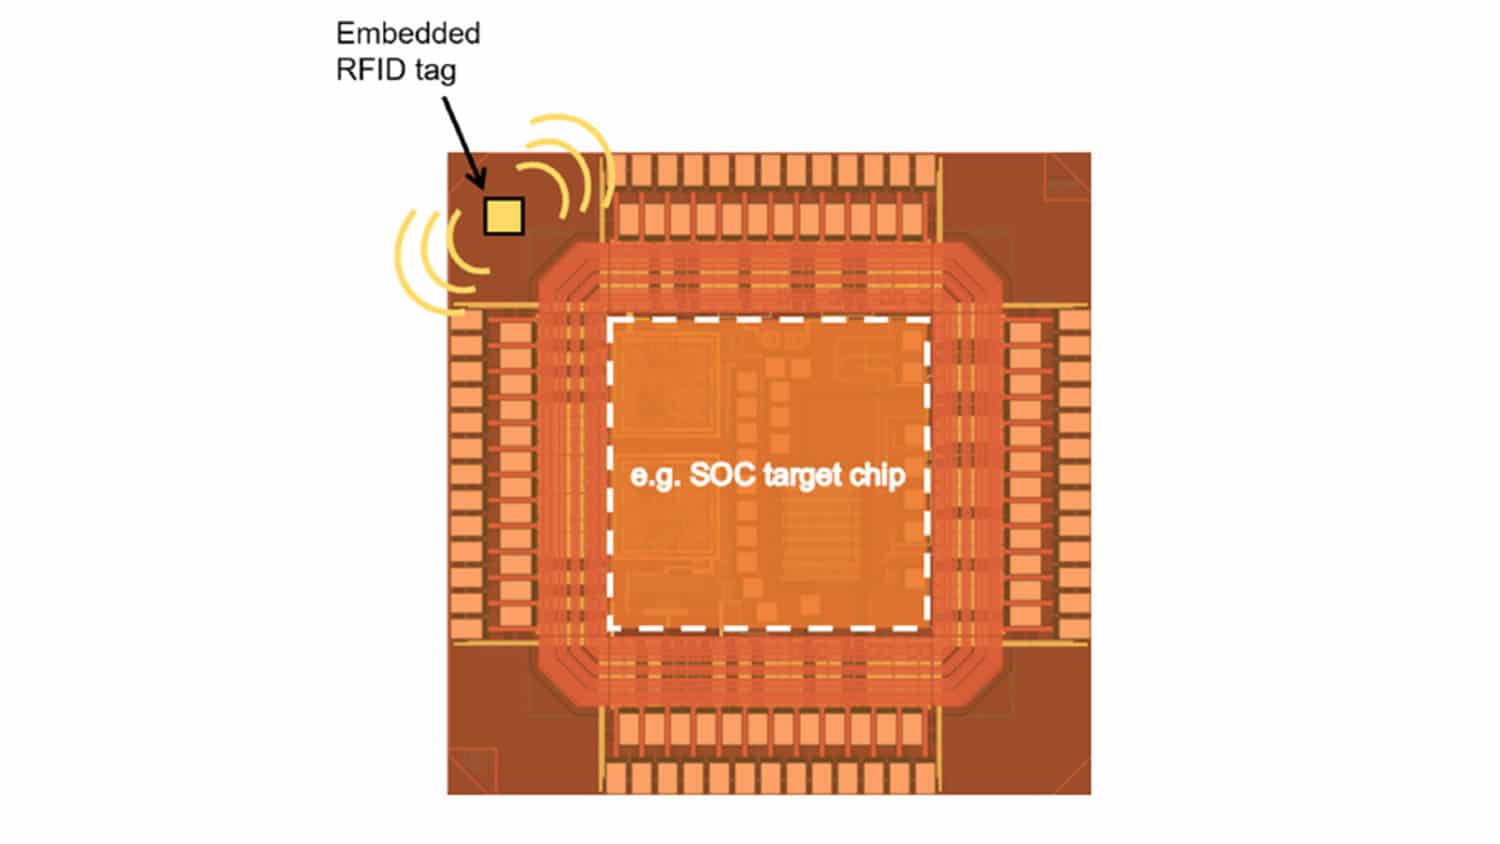 计算机芯片图与嵌入在角落的小RFID标签